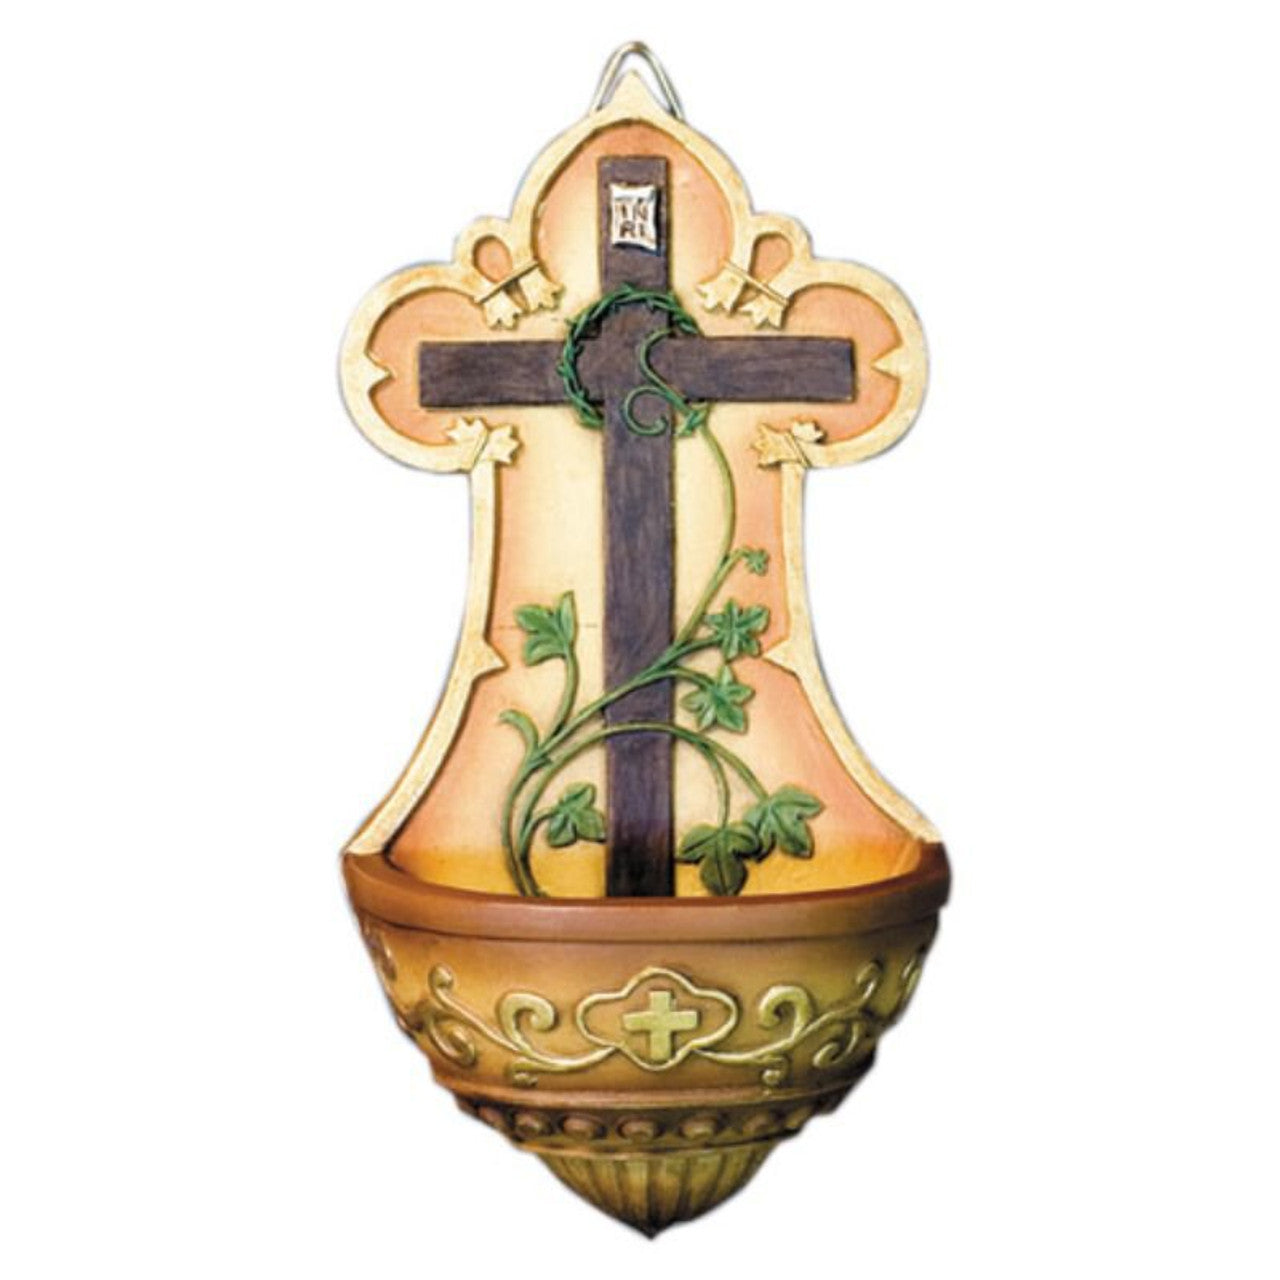 Fuente para agua bendita de la cruz – Santa Maria del Monte